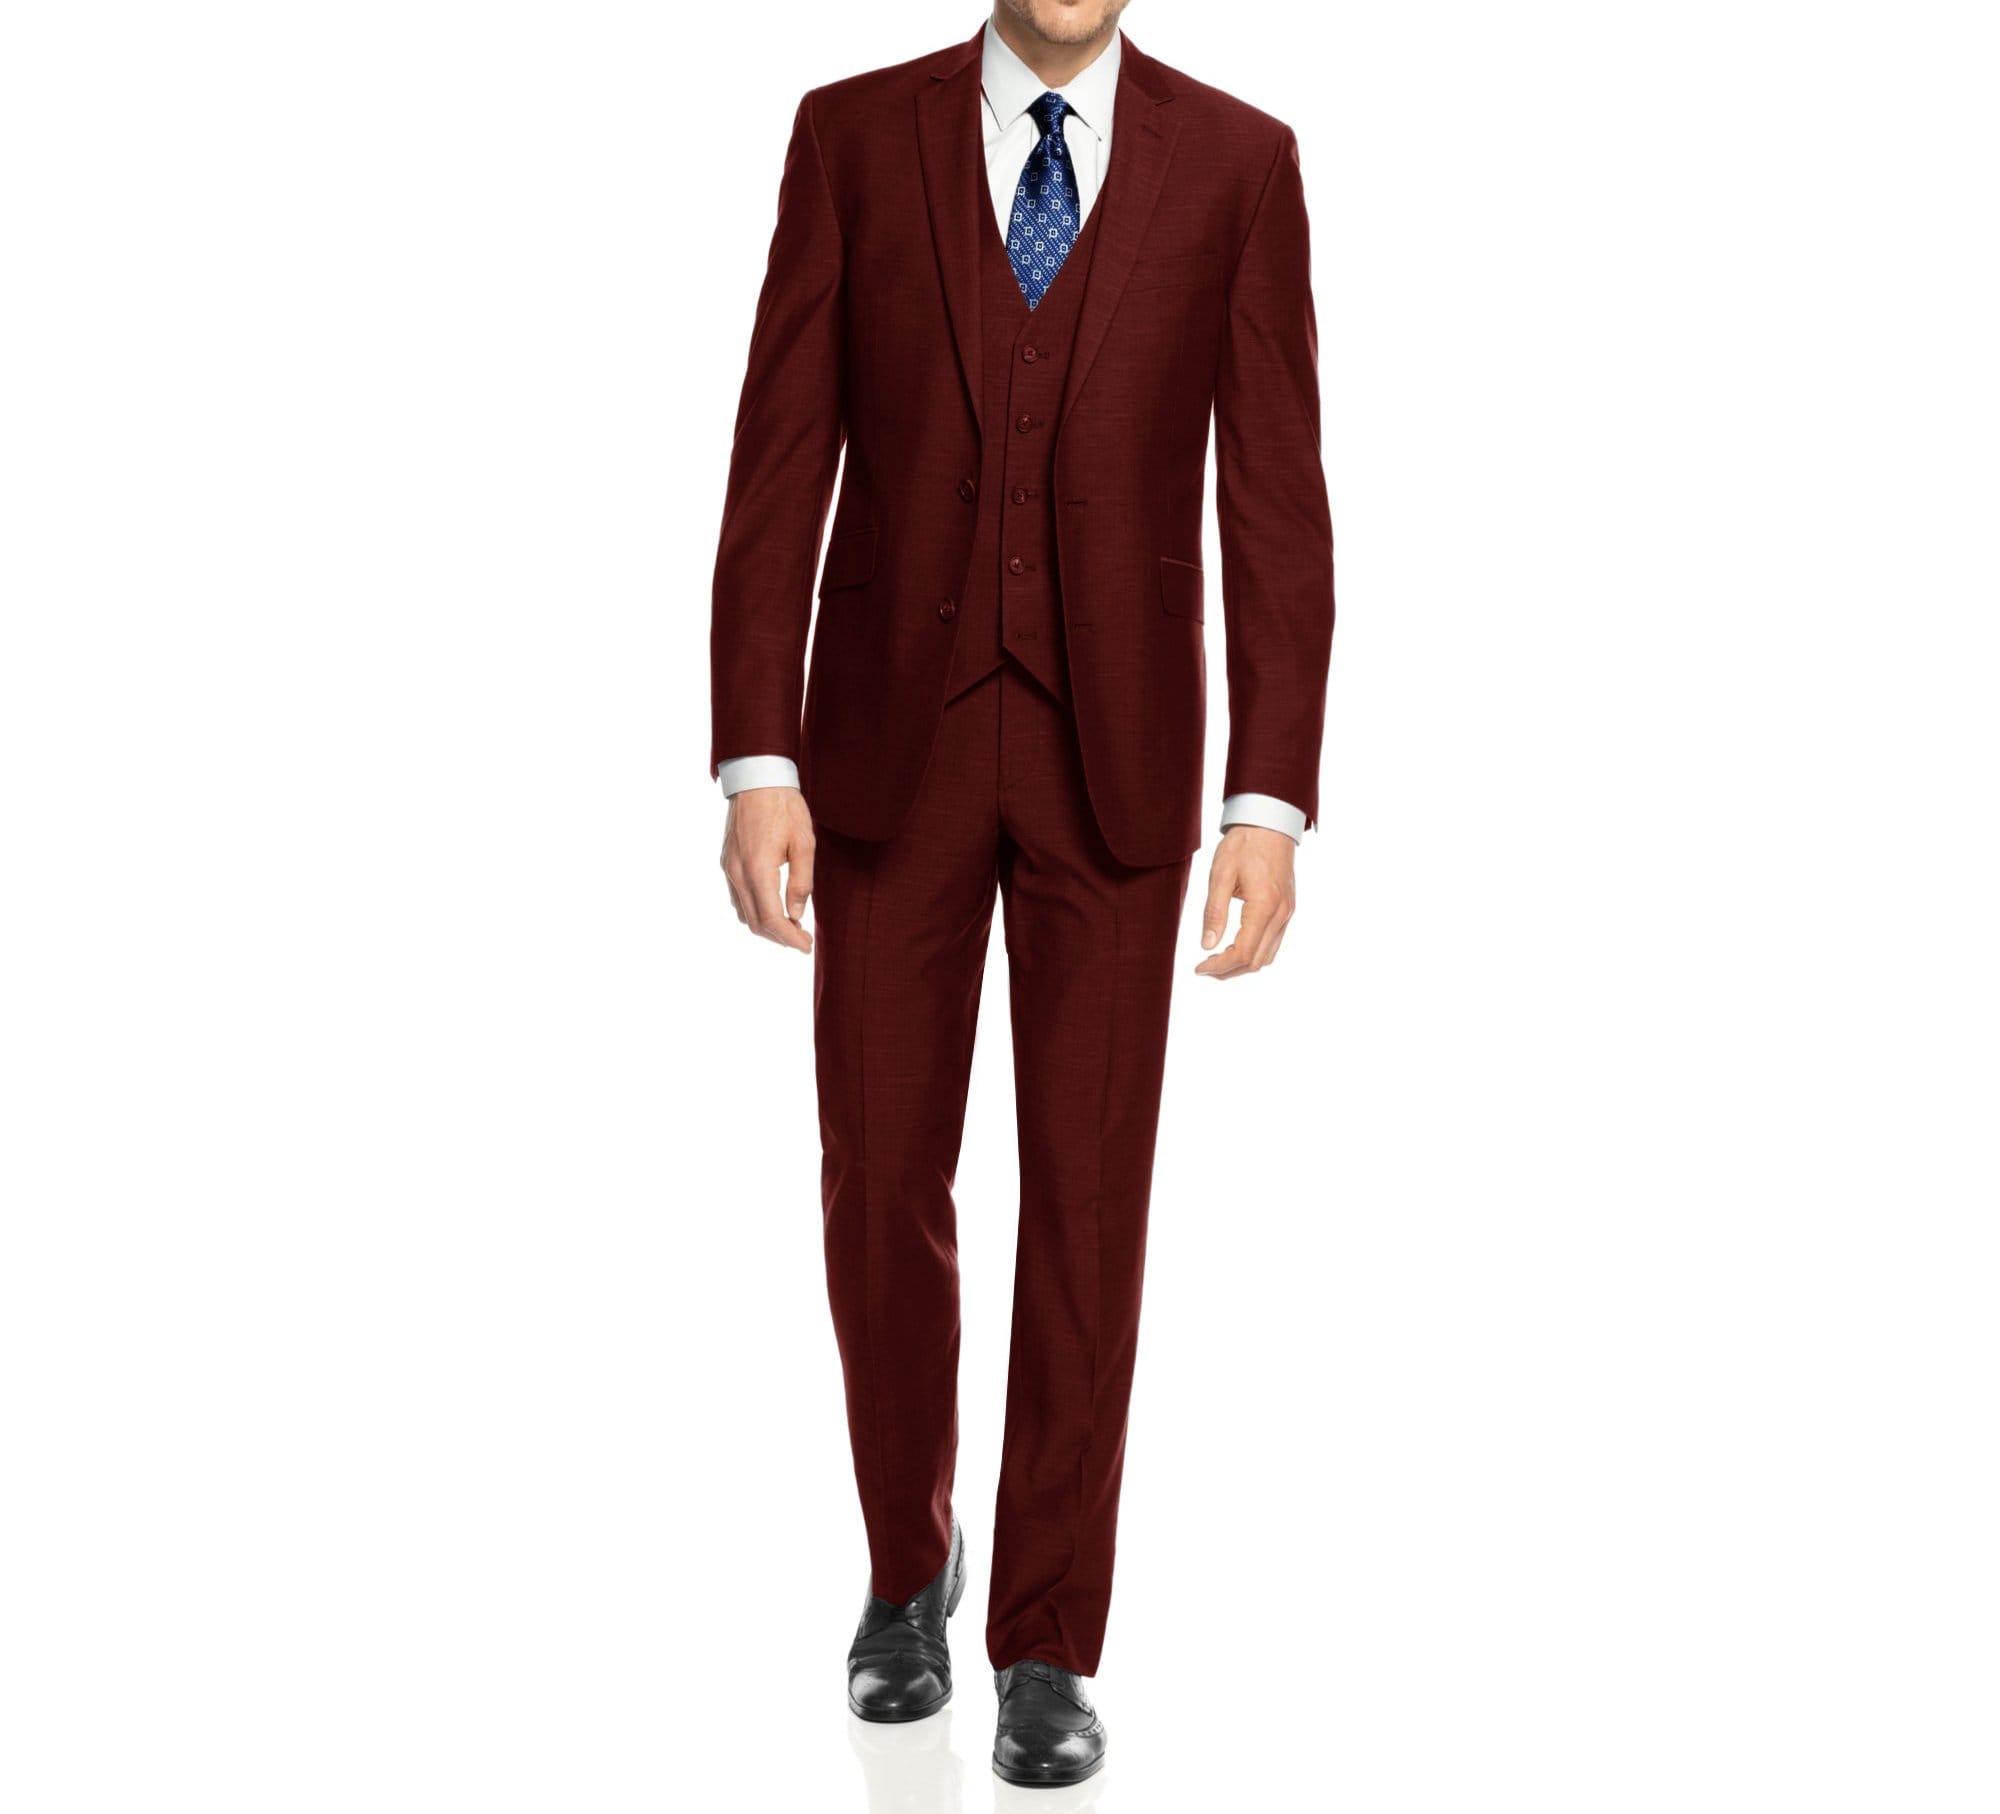 LUPURTY Suits for Men, 3 Piece Men's Suit Slim Fit, Solid Jacket Vest Pants  with Tie, One Button Tuxedo Set, Black XS at Amazon Men's Clothing store